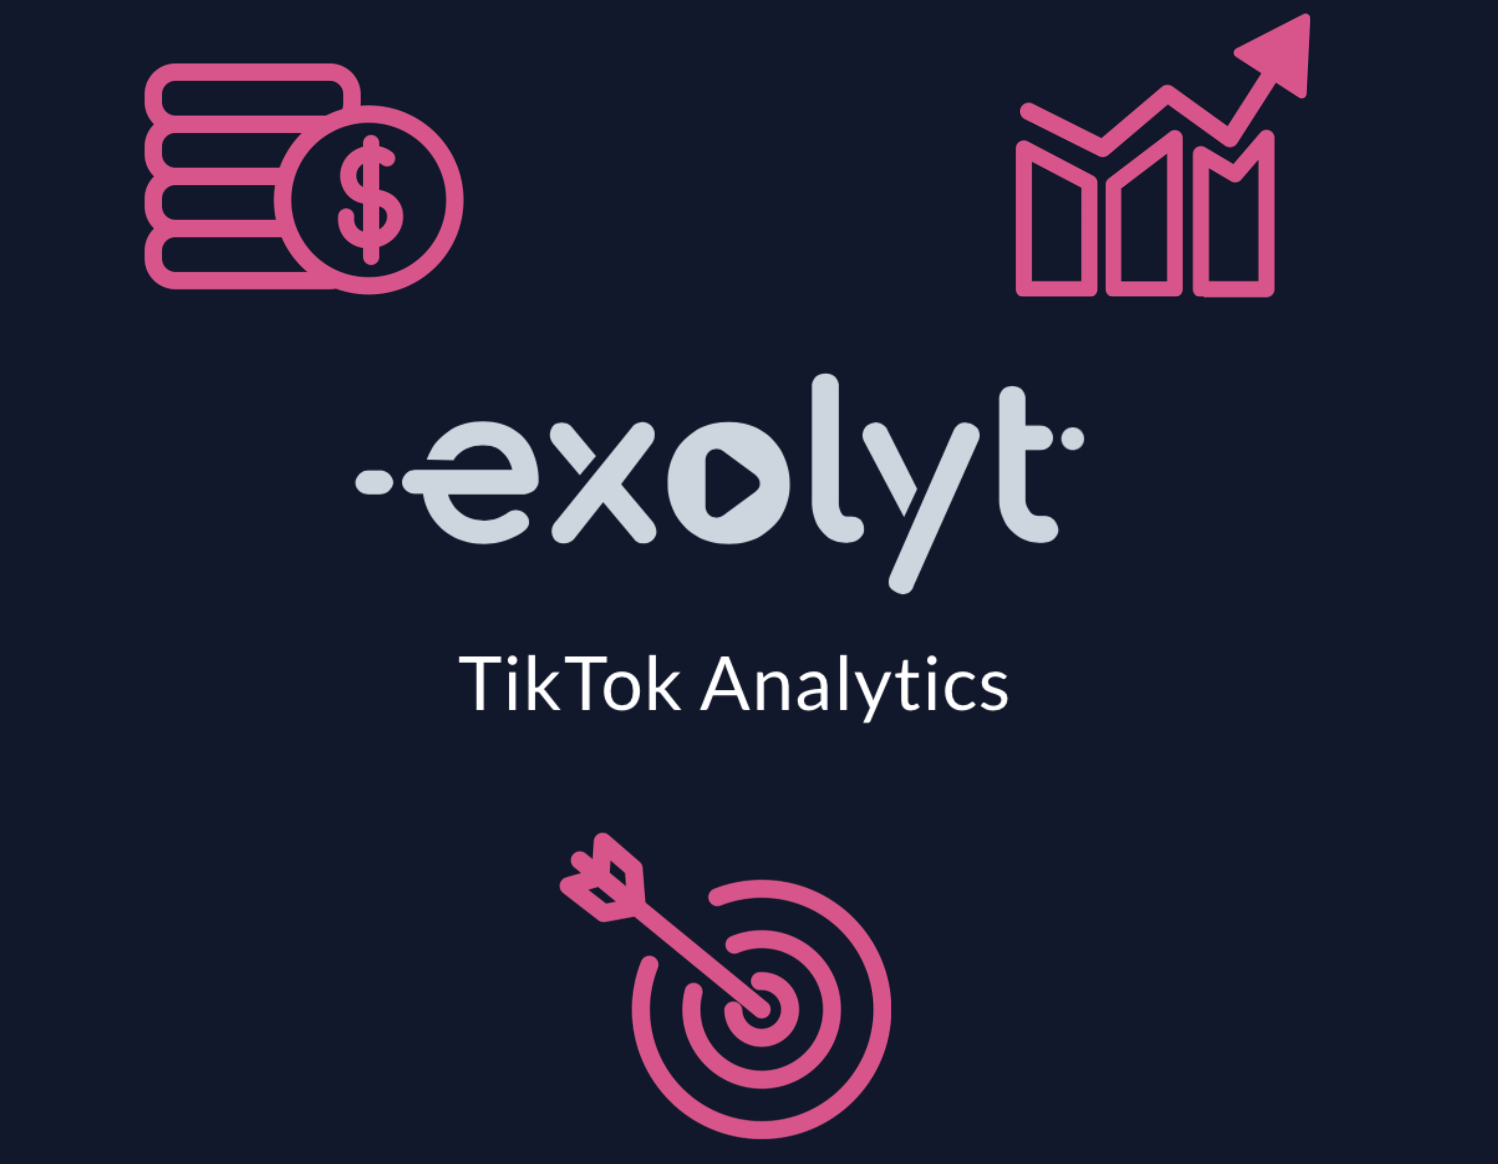 Perché le agenzie di media dovrebbero usare Exolyt per l'analisi di TikTok